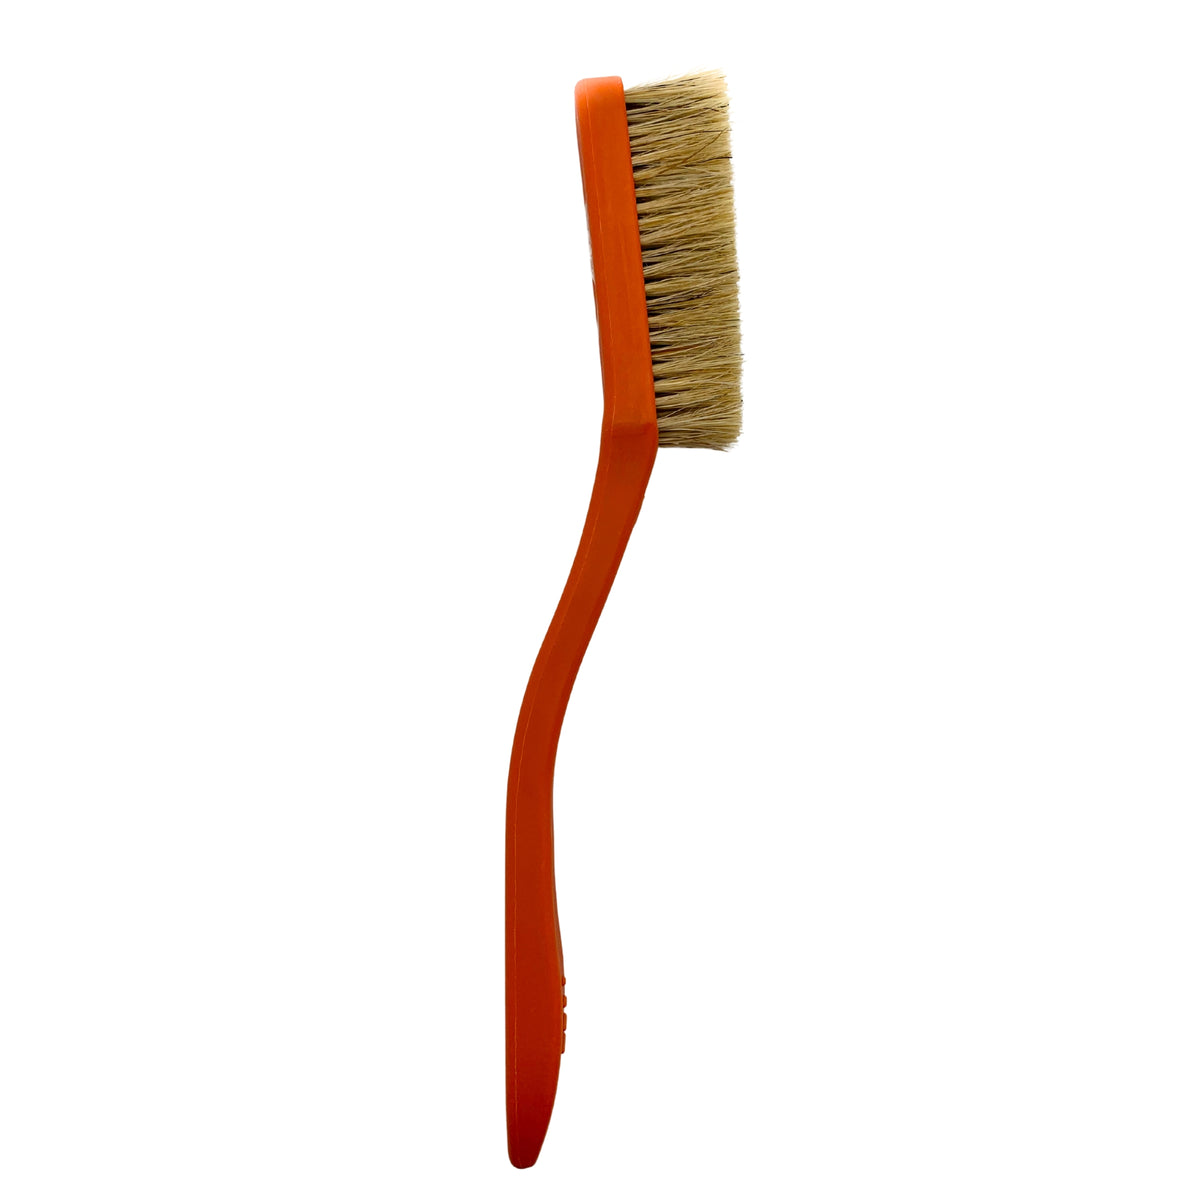 Rock + Run Boars Hair Brush in orange